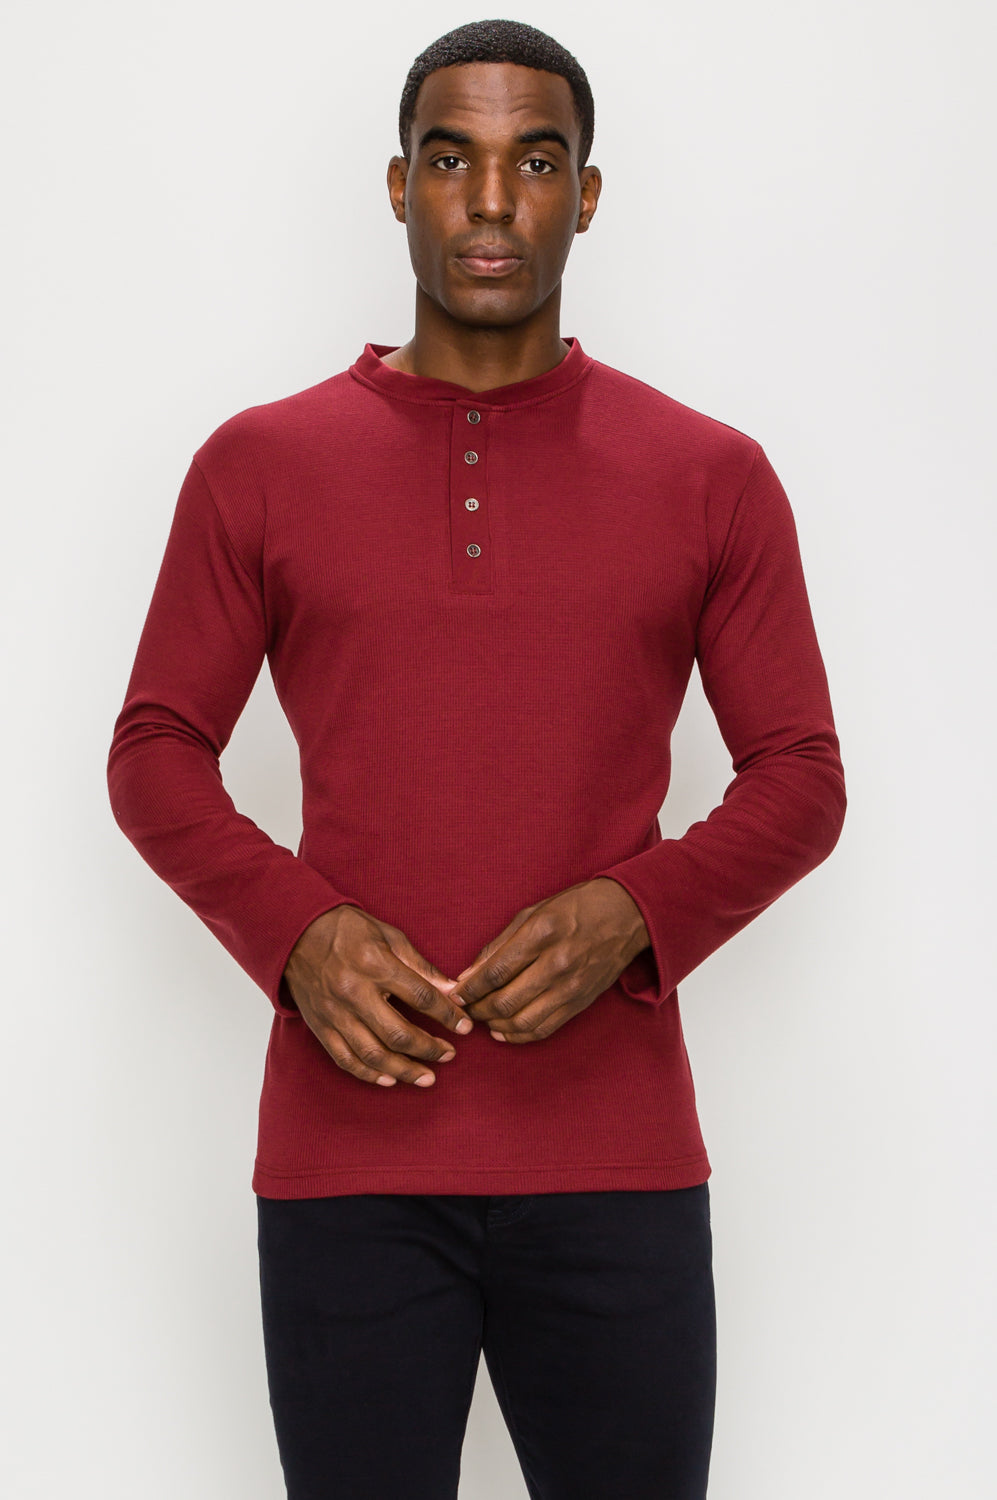 red long sleeve shirt for men